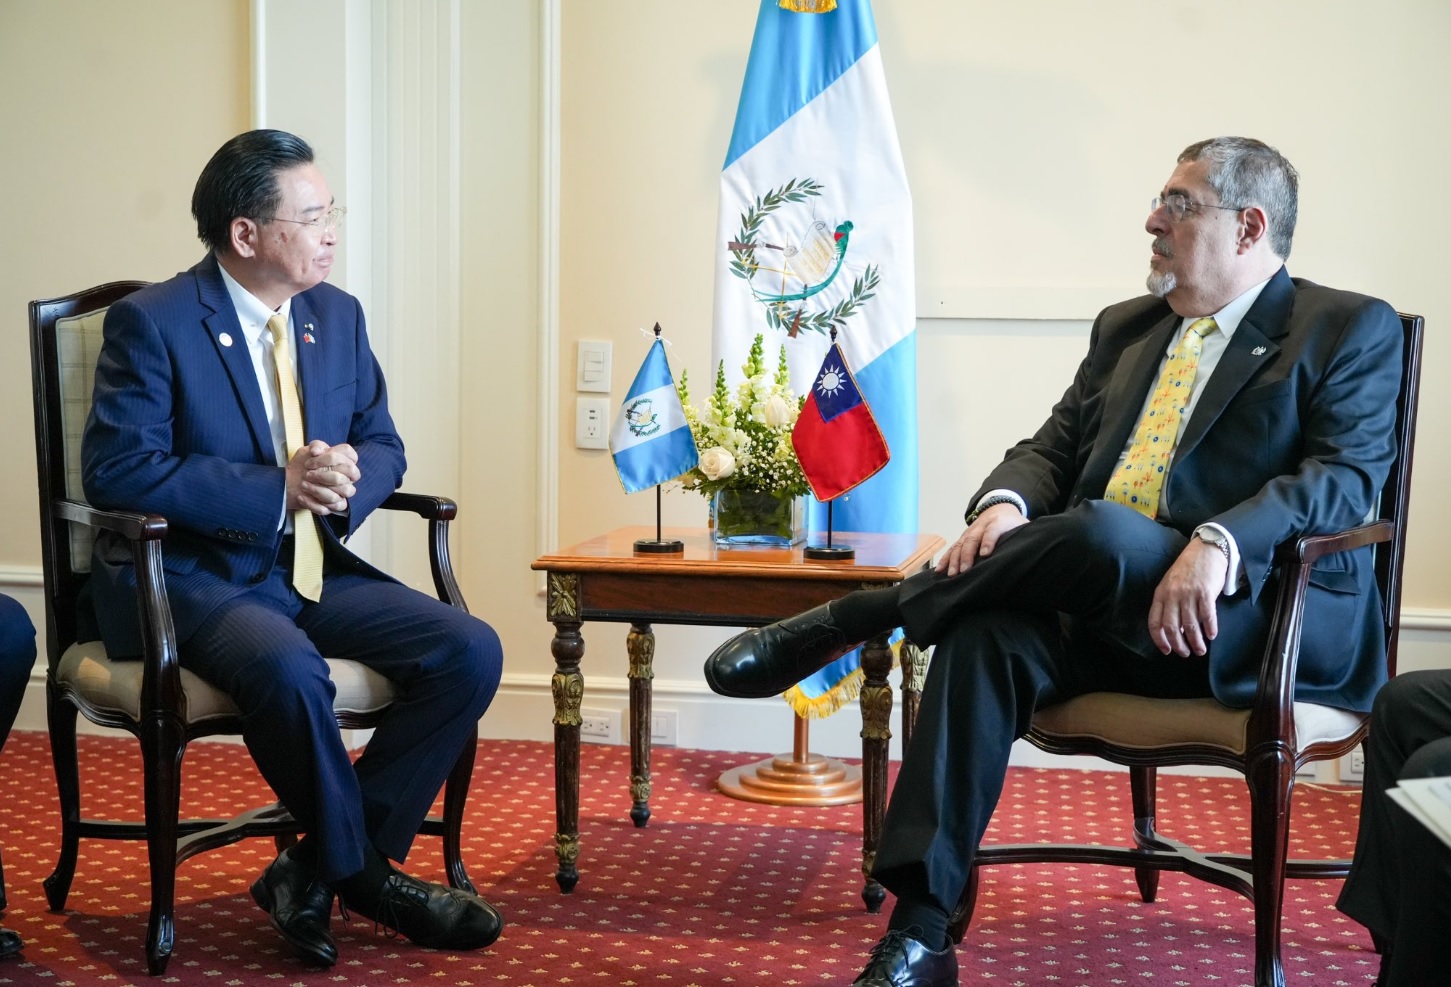 "Estamos listos para comenzar una nueva etapa para Guatemala mañana", publicó el mandatario electo junto a una fotografía con Joseph Wu, Ministro de Asuntos Exteriores de la República de China (Taiwán).